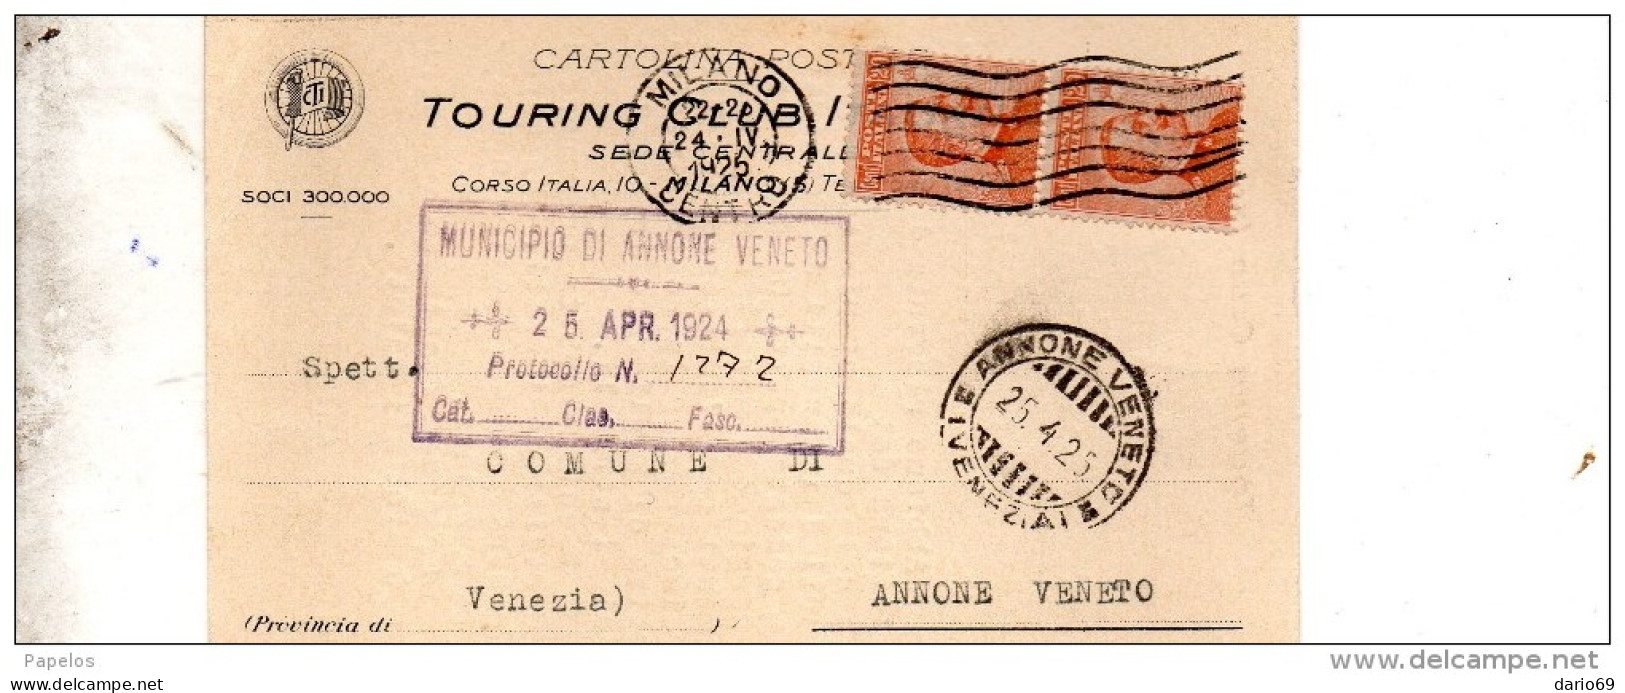 1925 CARTOLINA INTESTATA TOURING CLUB CON ANNULLO MILANO + ANNONE VENETO VENEZIA - Marcofilía